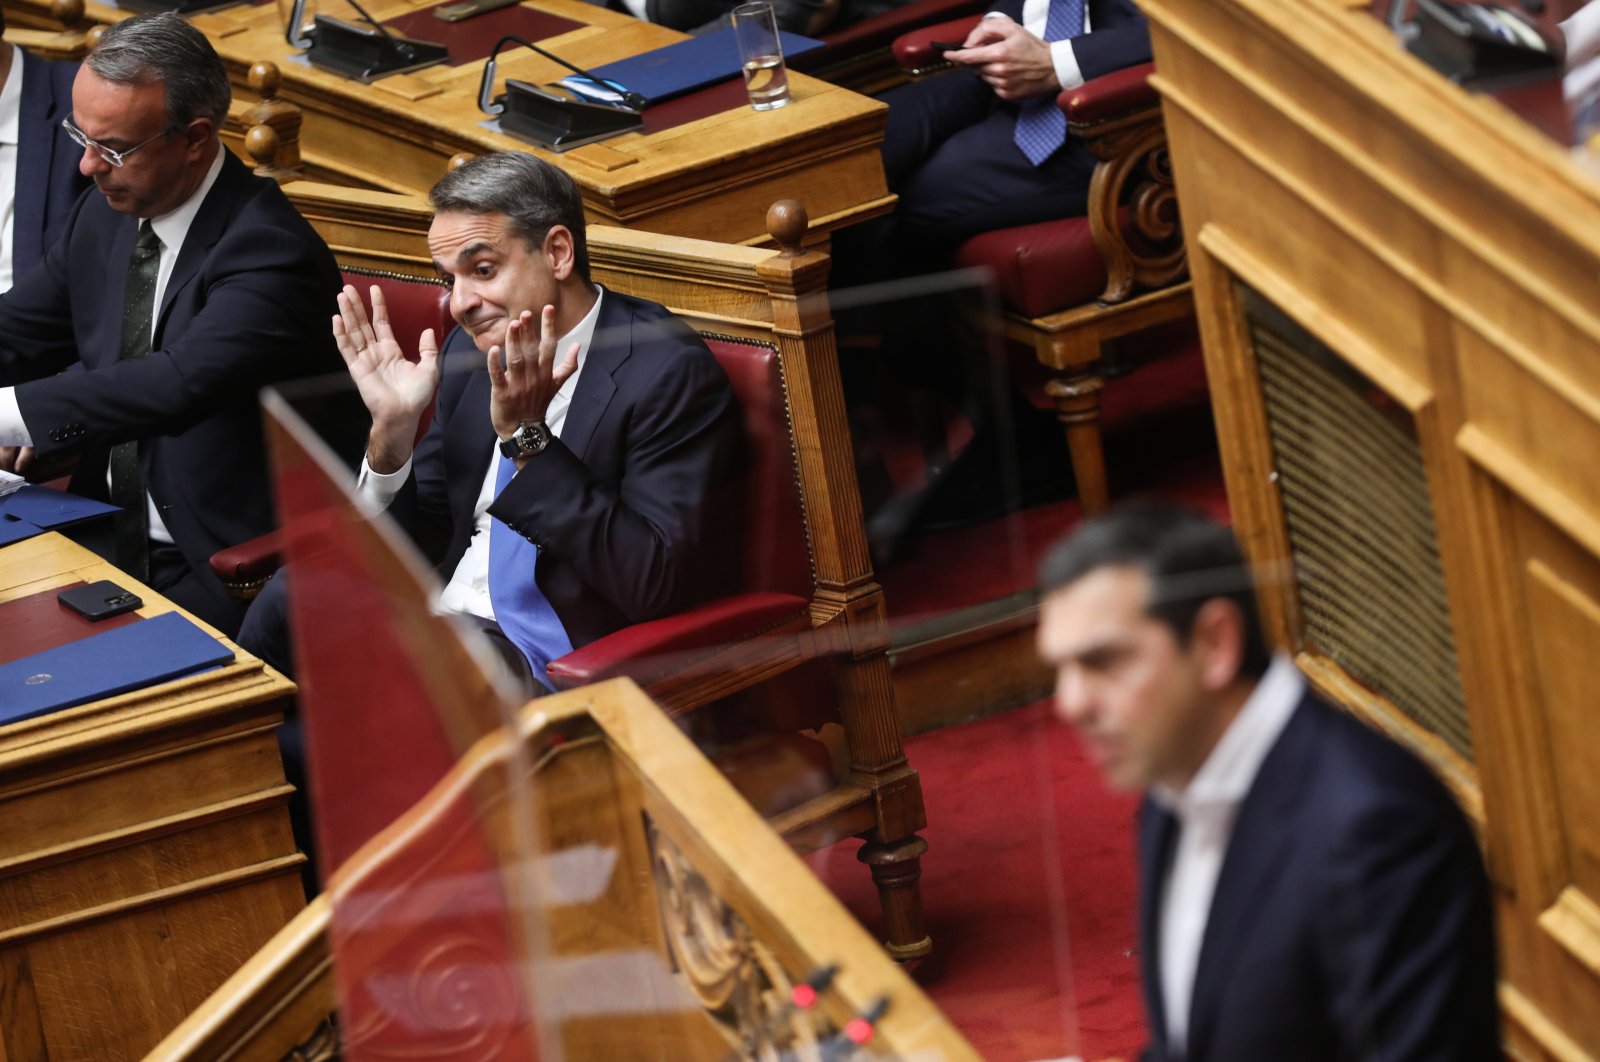 Pemerintah Yunani mengeksploitasi pertahanan untuk keuntungan politik: Oposisi